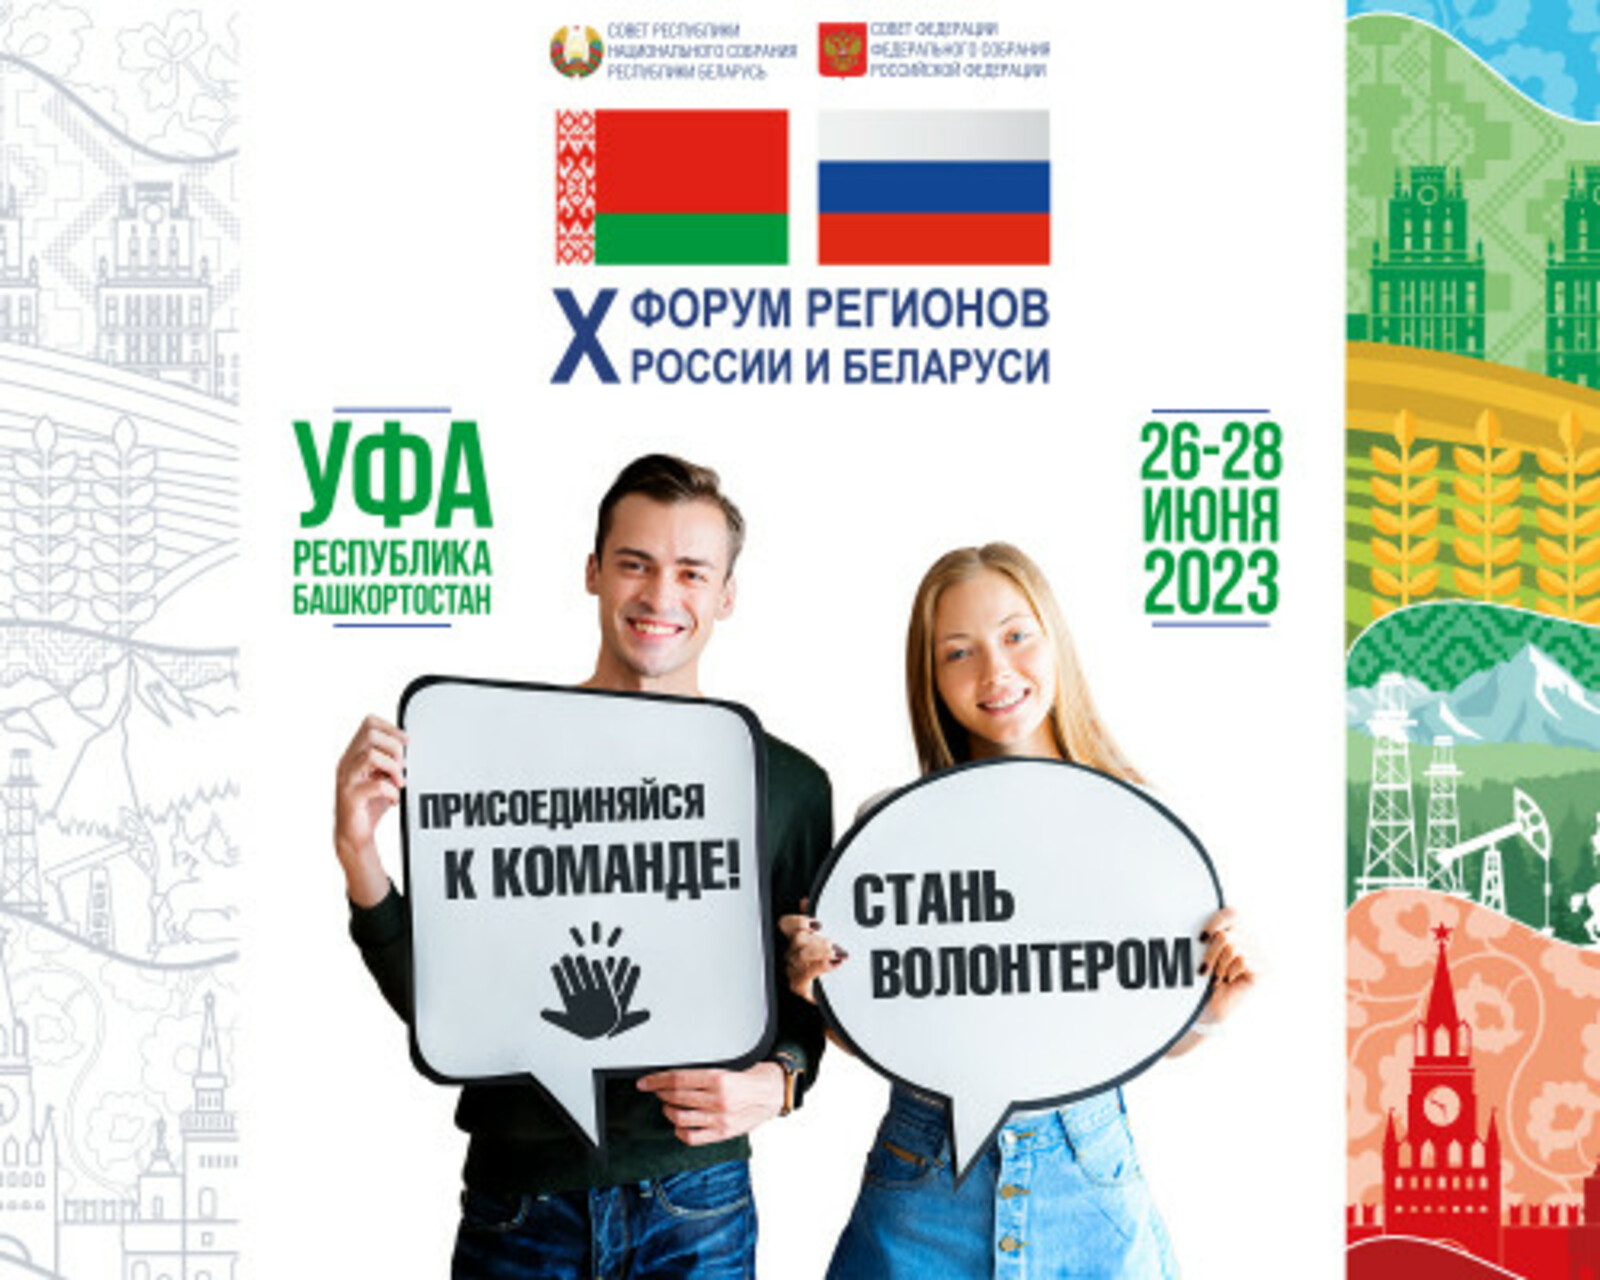 Станьте волонтером X юбилейного форума регионов России и Беларуси!